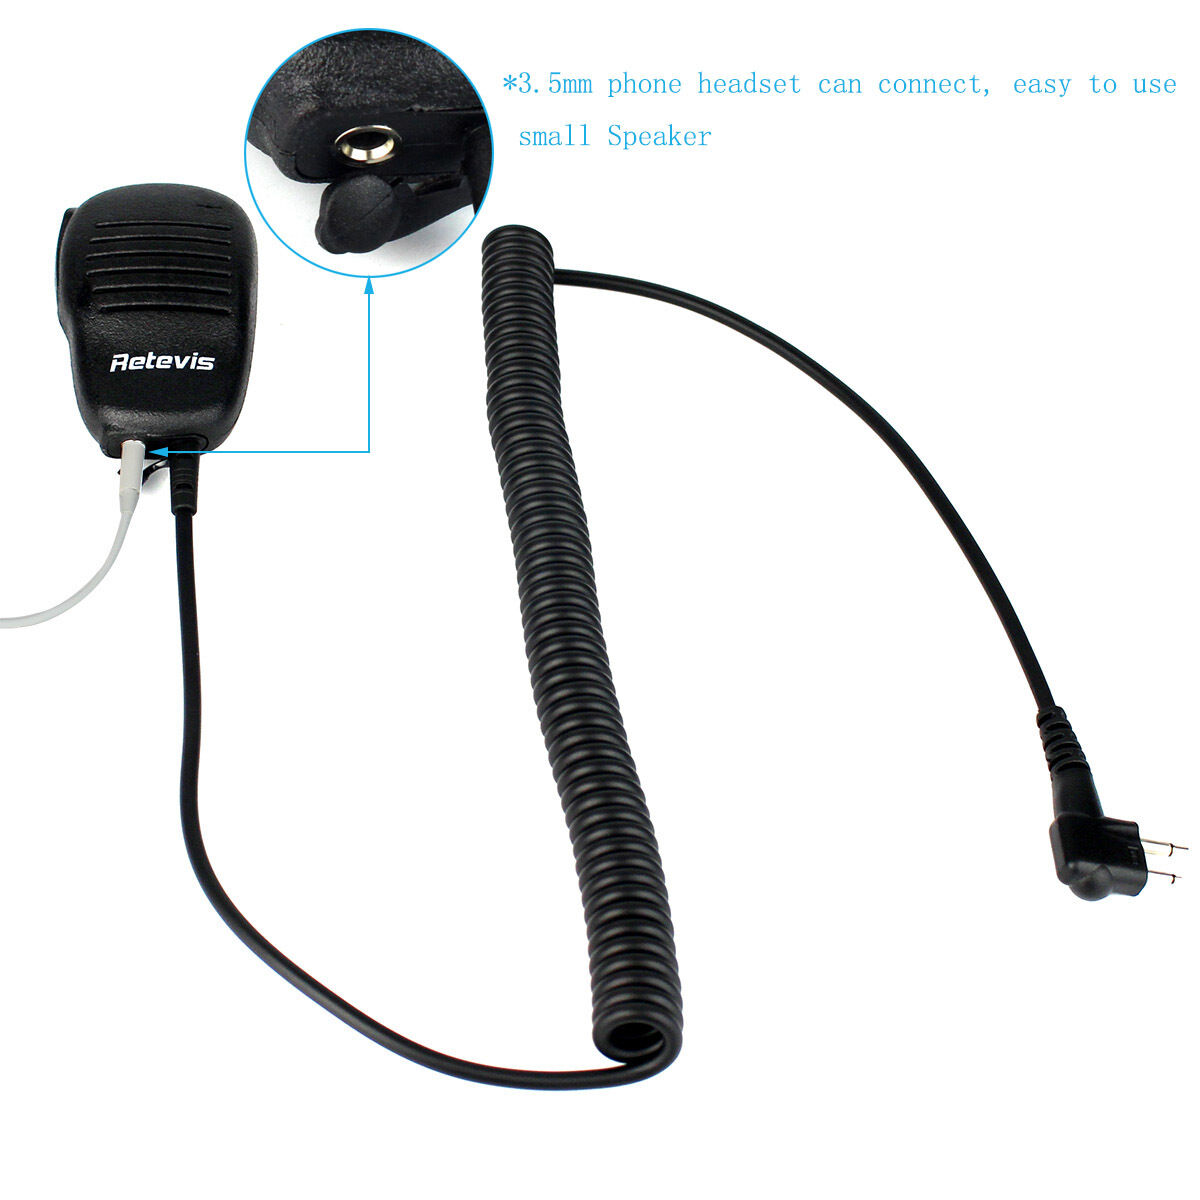 Mini Motorola 2-Pin Shoulder Speaker Mic for Handheld 2-Way Radios